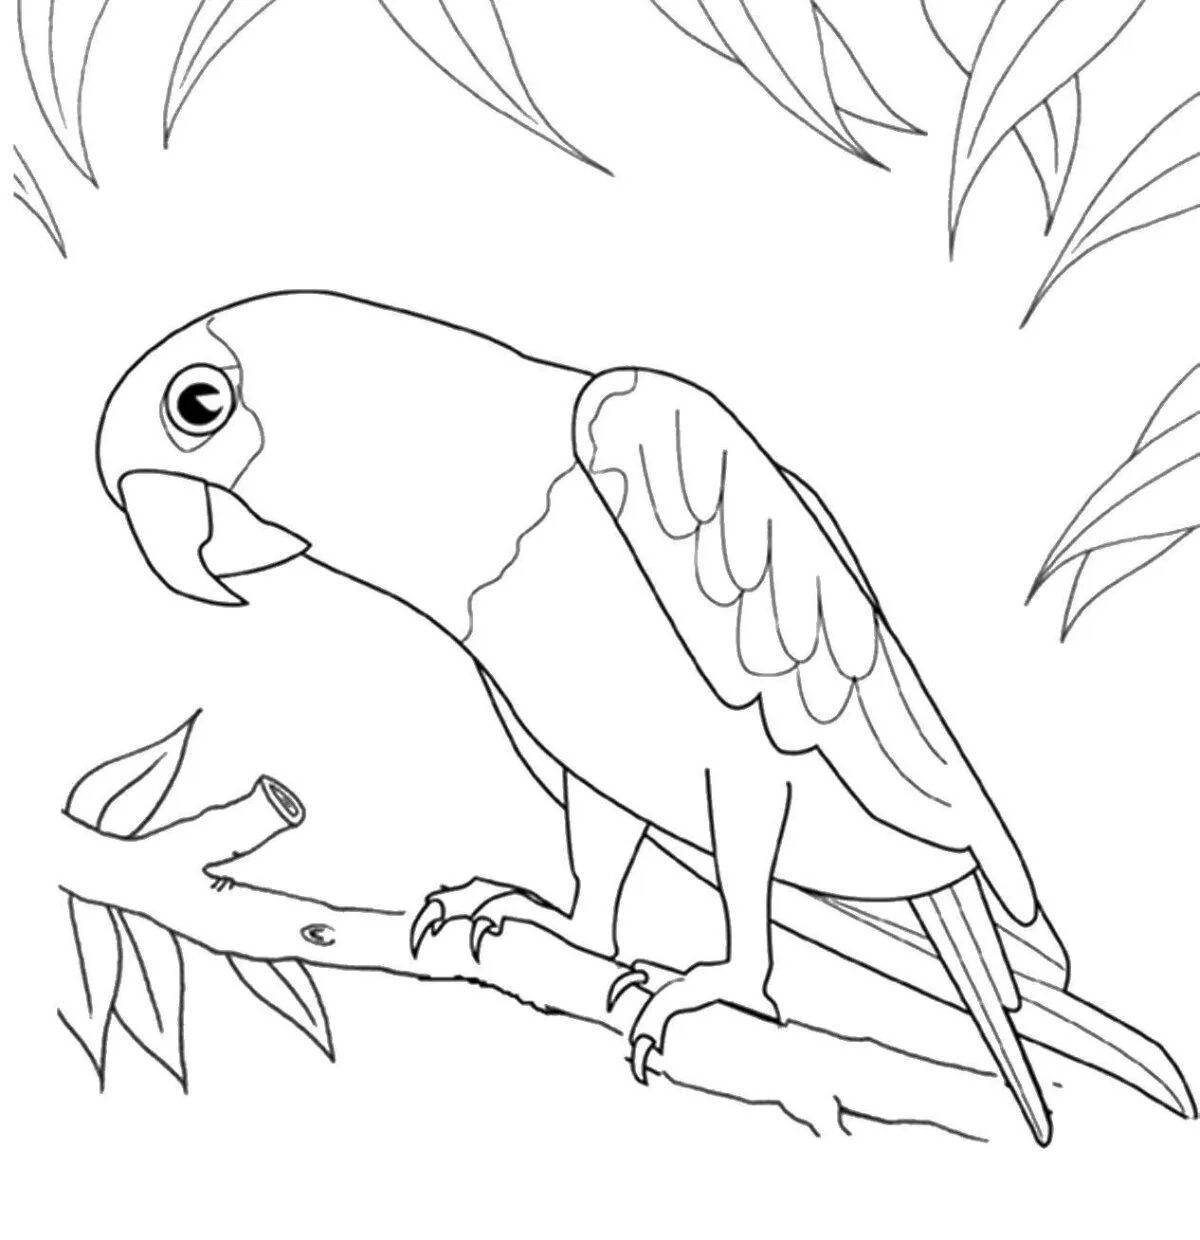 Смешной рисунок попугая для детей